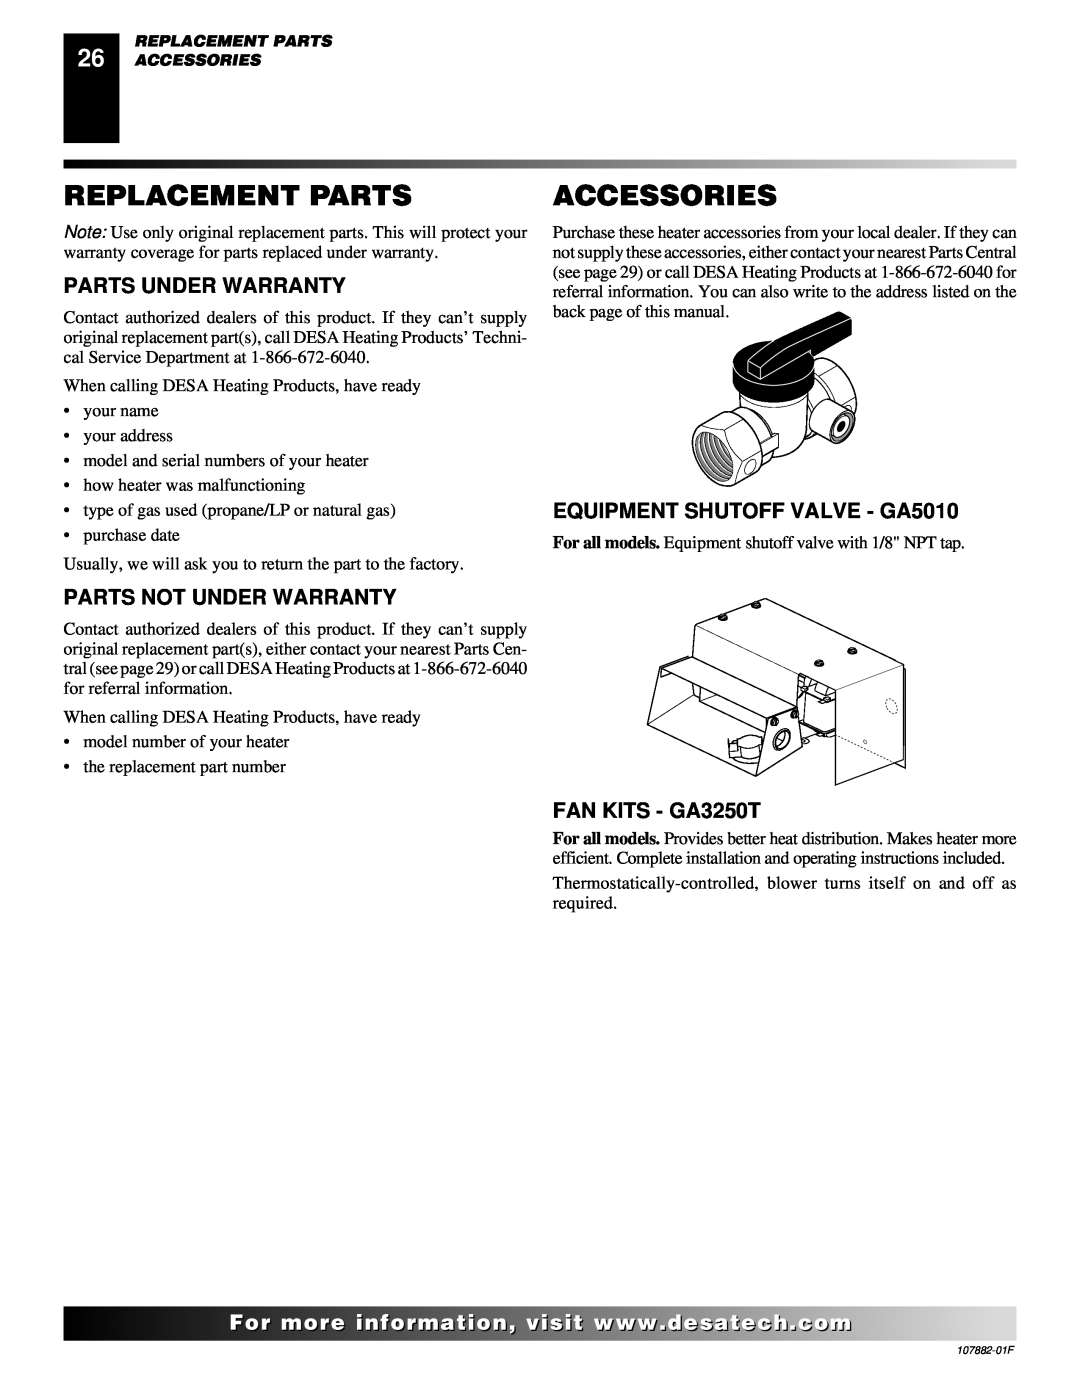 Desa CBN20 Replacement Parts, Accessories, Parts Under Warranty, EQUIPMENT SHUTOFF VALVE - GA5010, FAN KITS - GA3250T 